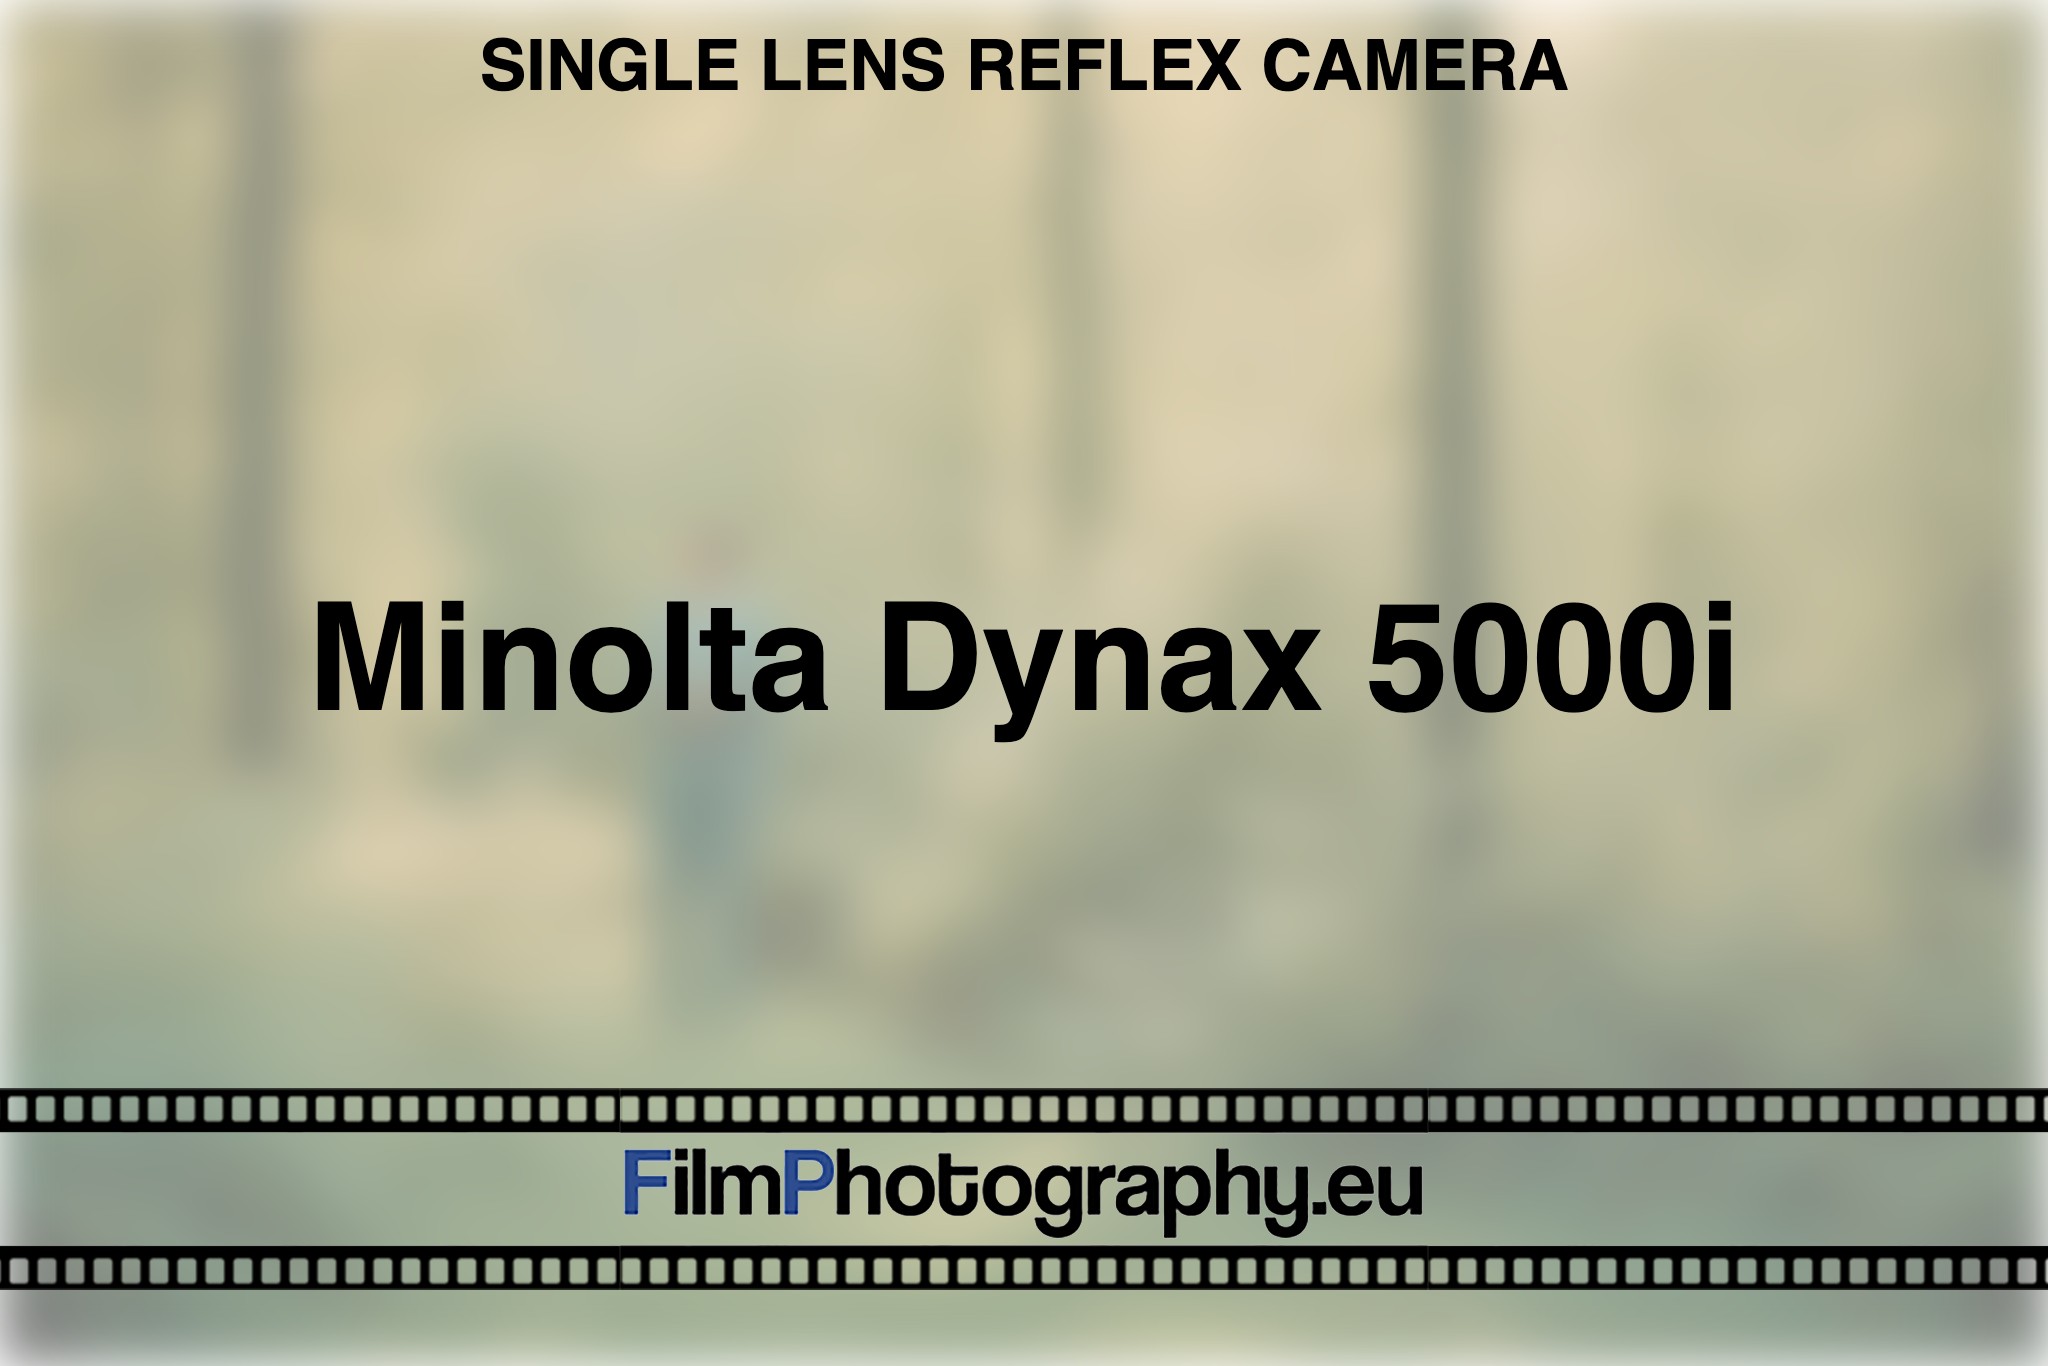 minolta-dynax-5000i-single-lens-reflex-camera-bnv